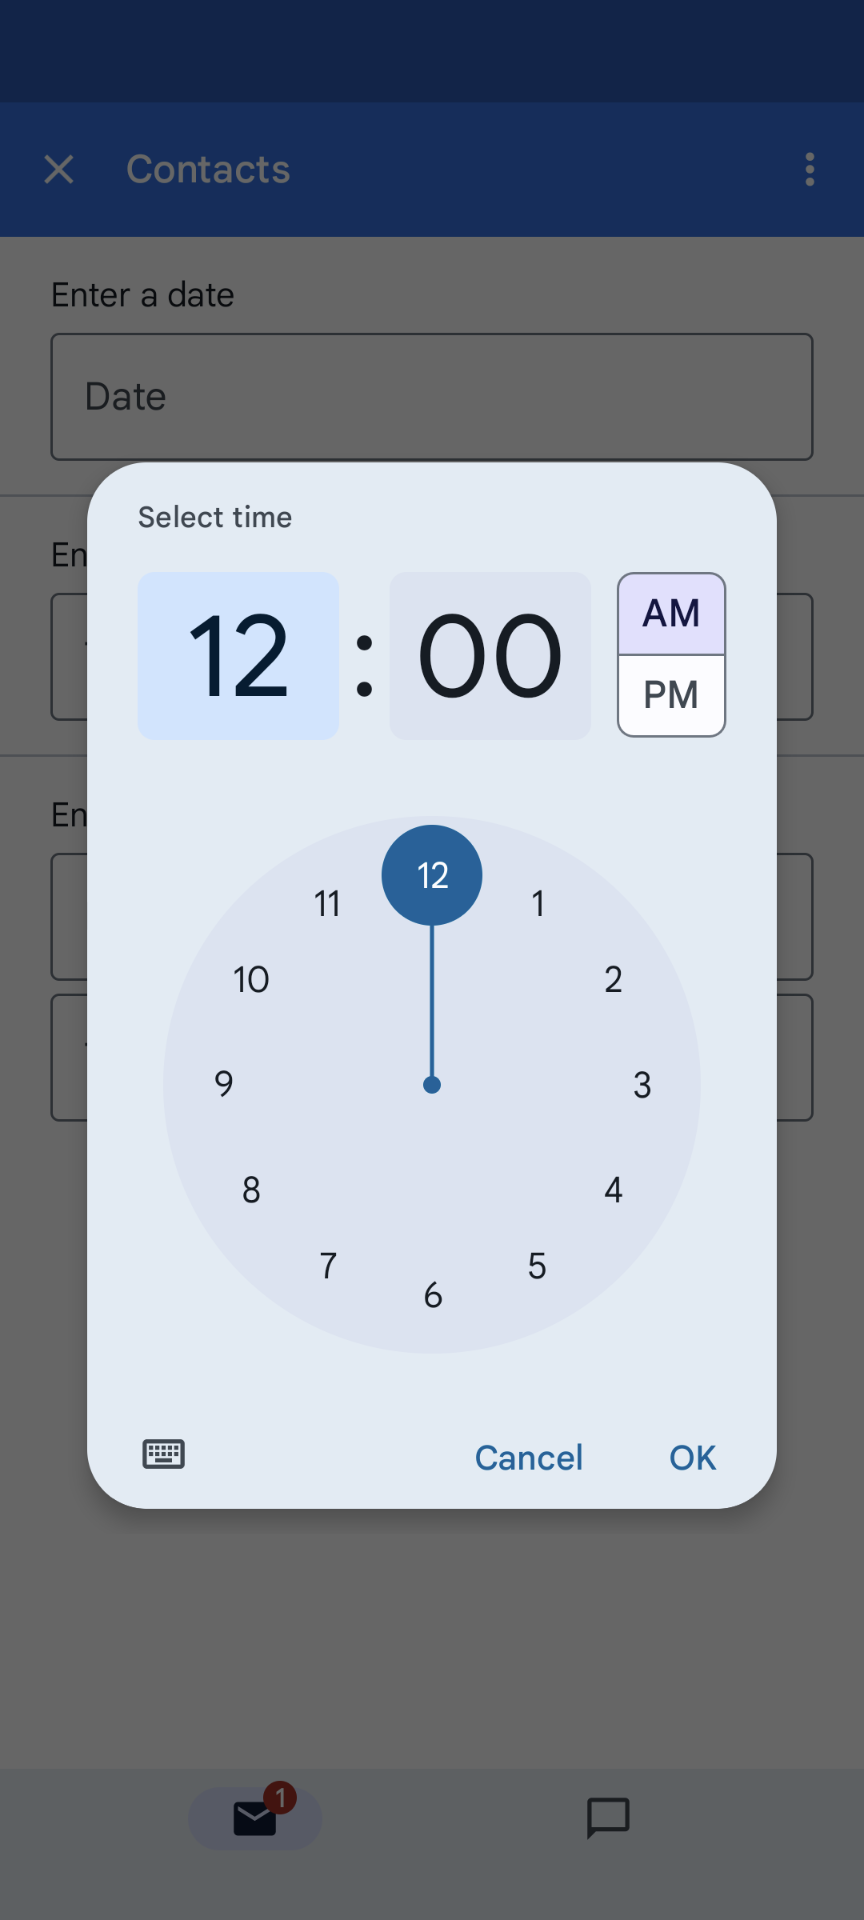 ví dụ về lựa chọn bộ chọn giờ trên thiết bị di động